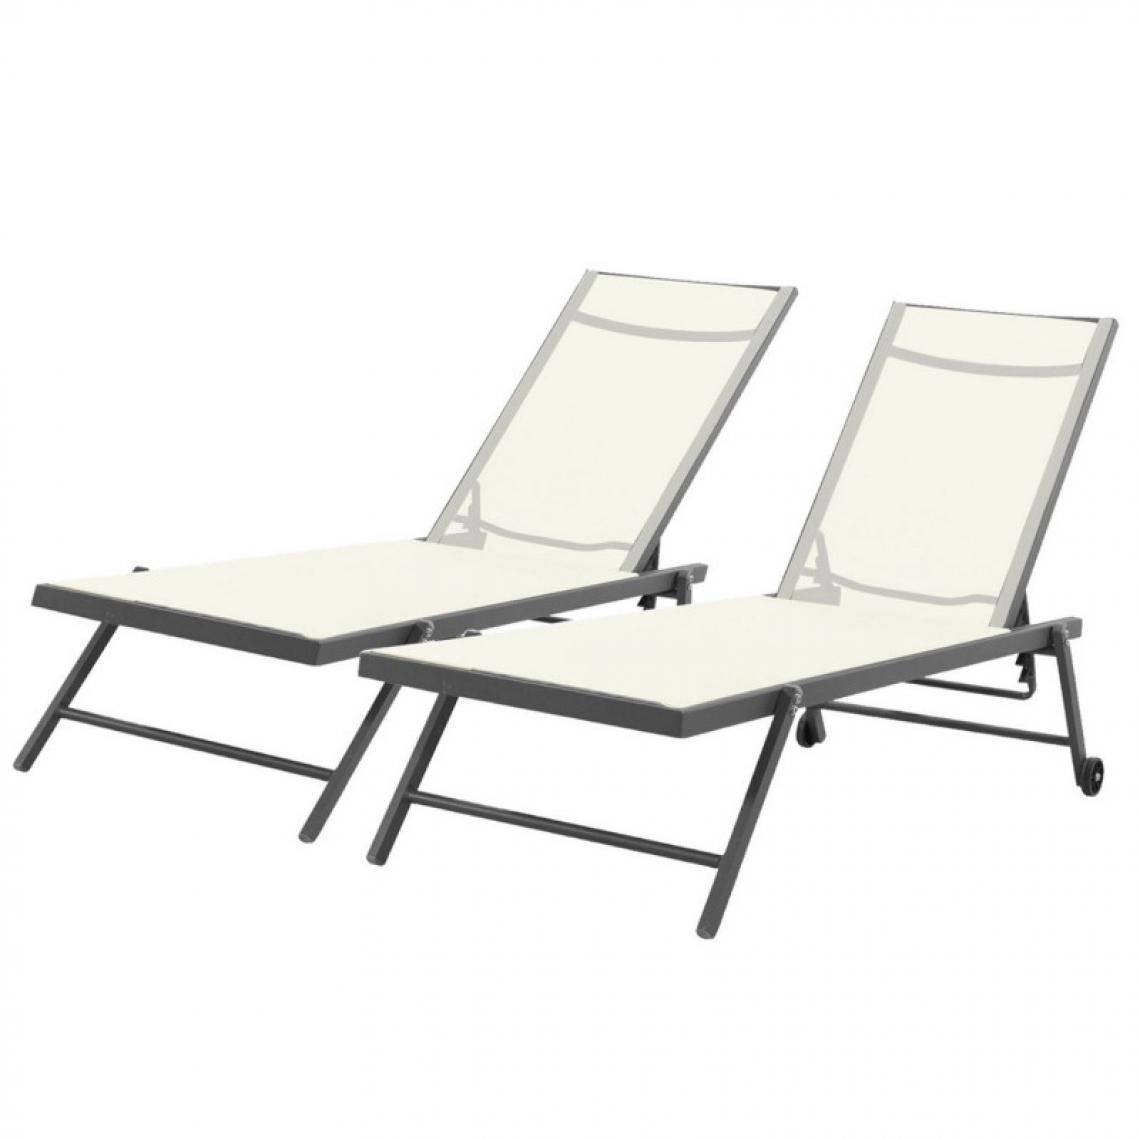 Avril Paris - Lot de 2 bains de soleil / transat de aluminium inclinable avec roulettes - Anthracite beige - ALIA - Transats, chaises longues